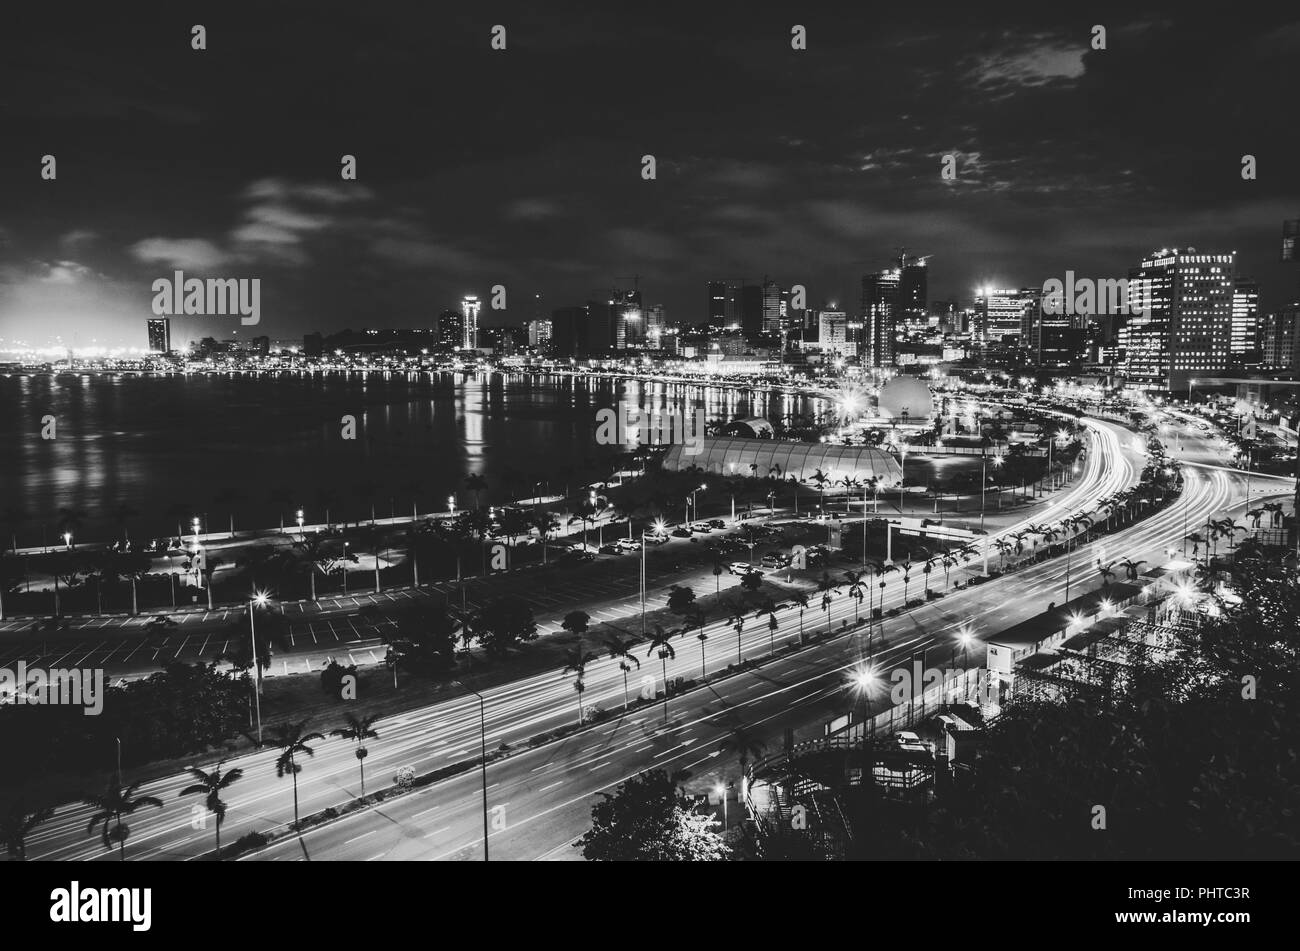 Toits de Luanda et son bord de mer pendant la nuit, l'Angola, l'Afrique. Banque D'Images